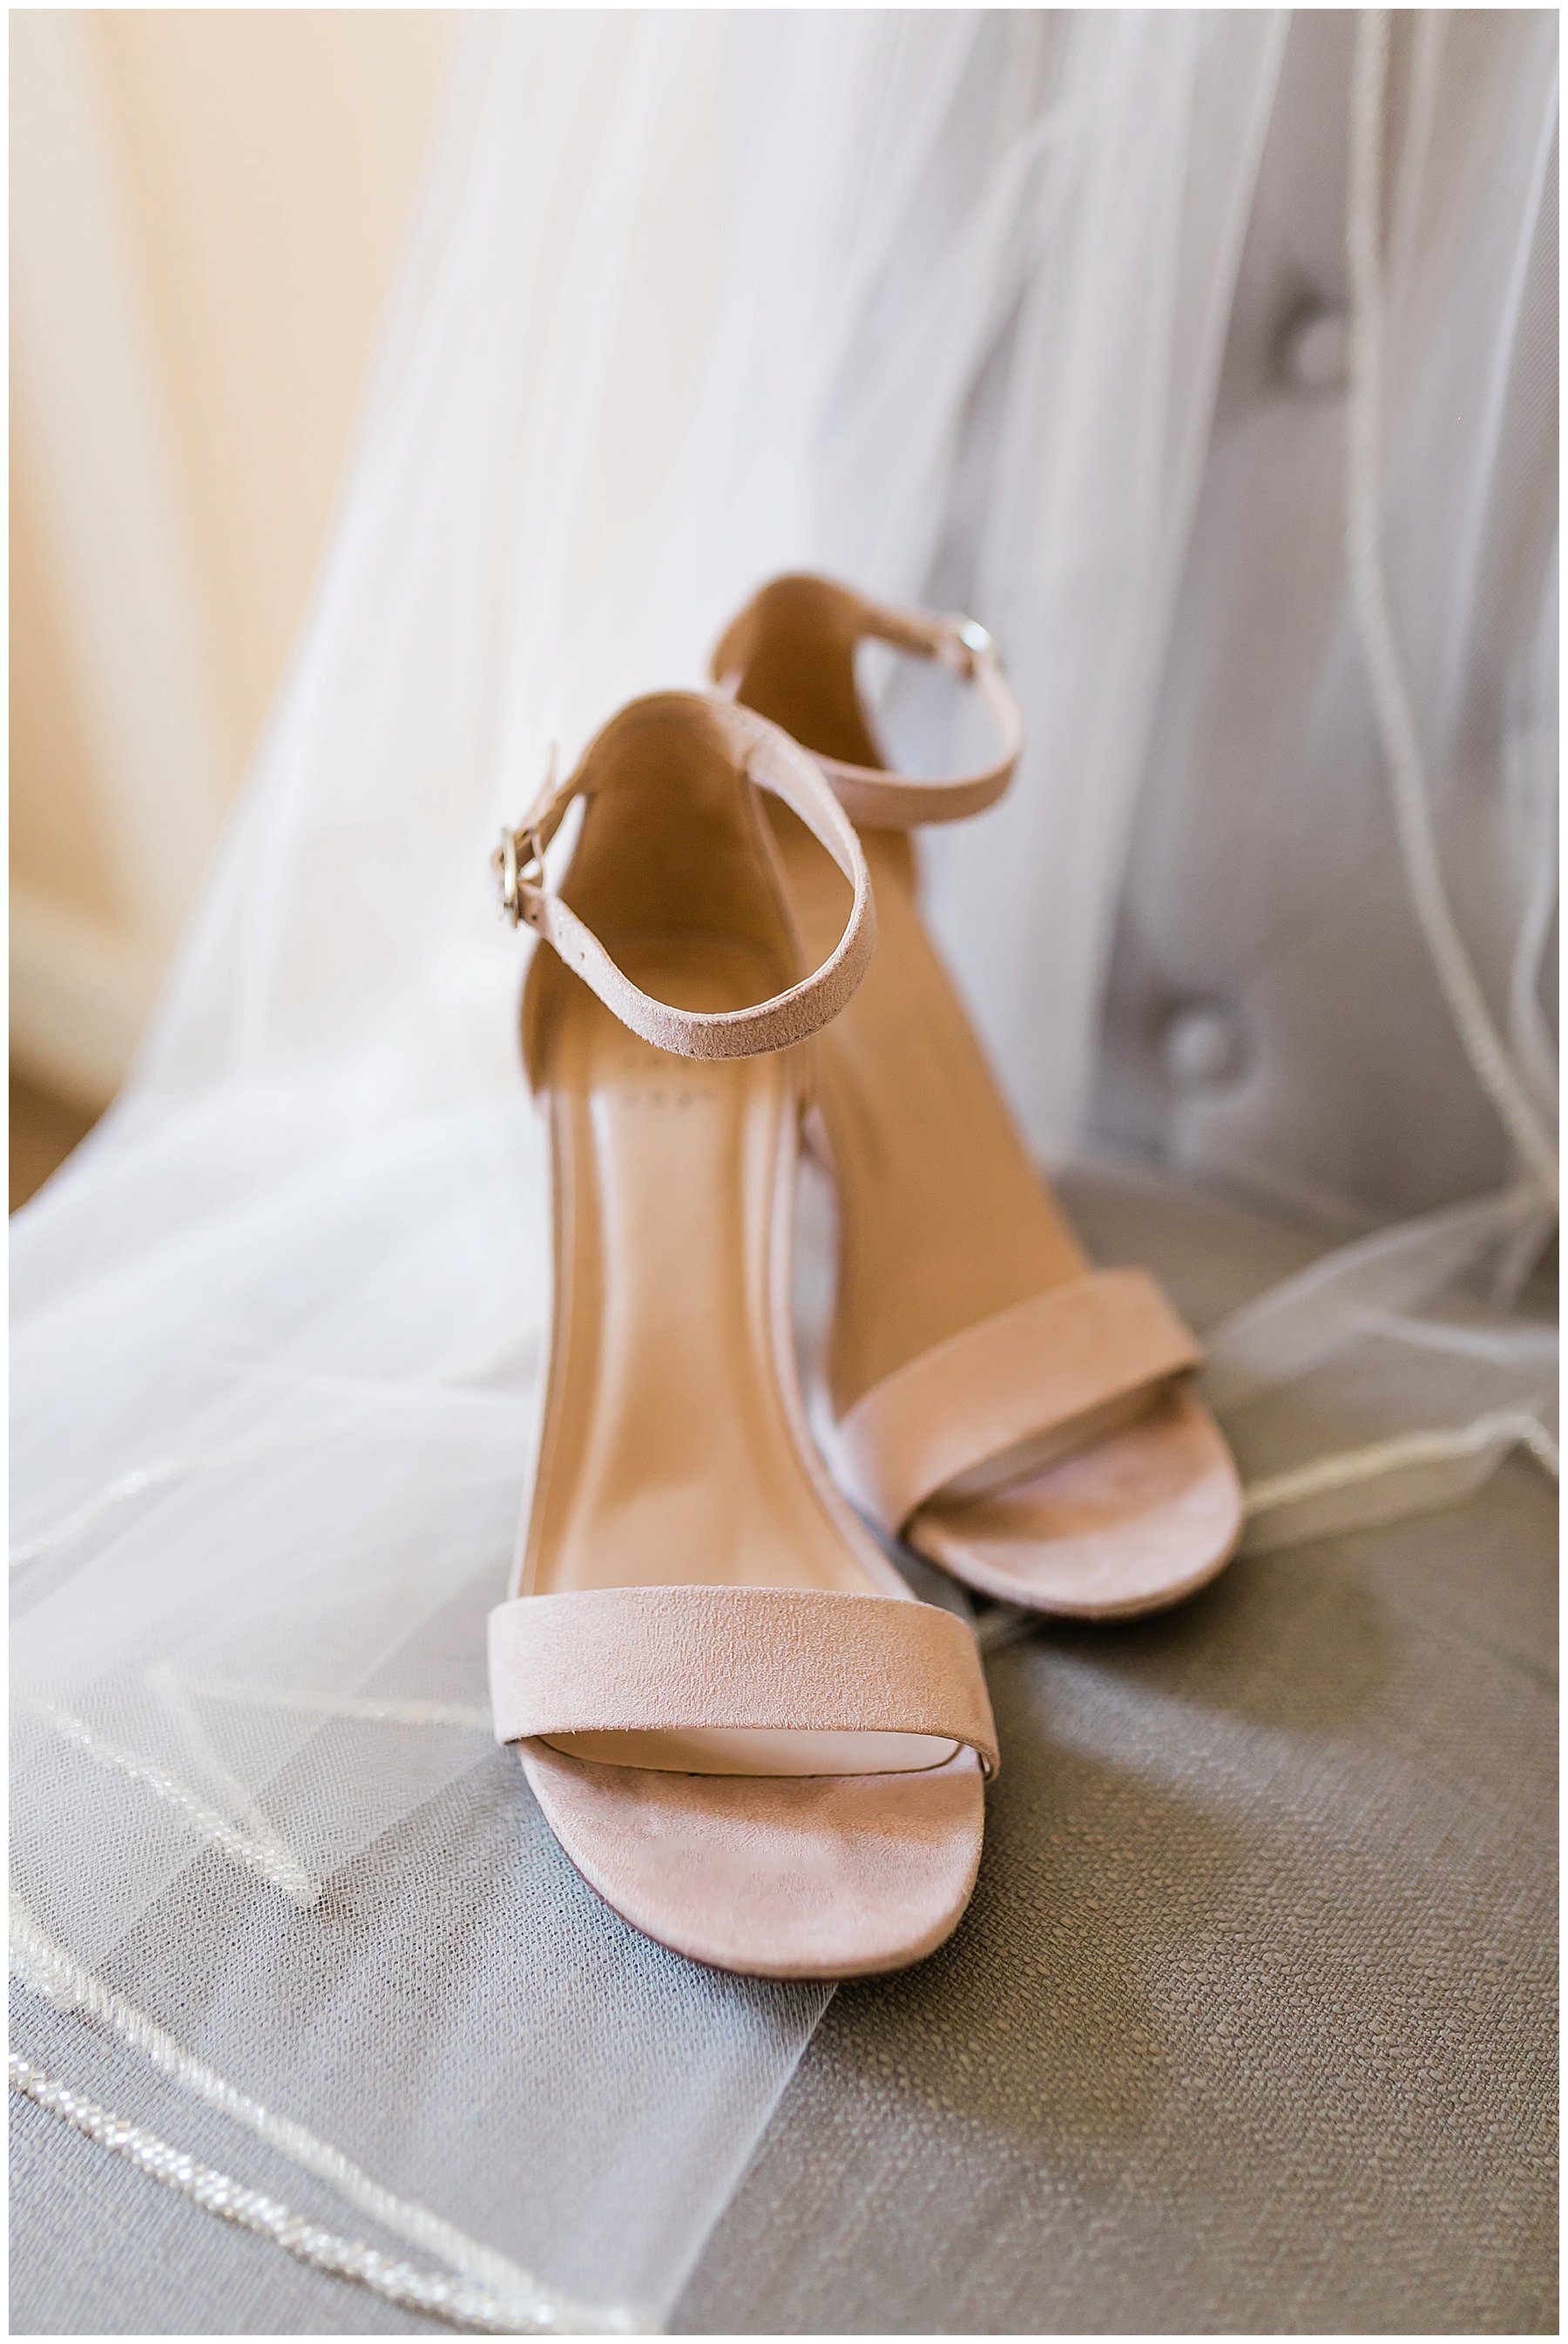  bride’s heels on her veil 